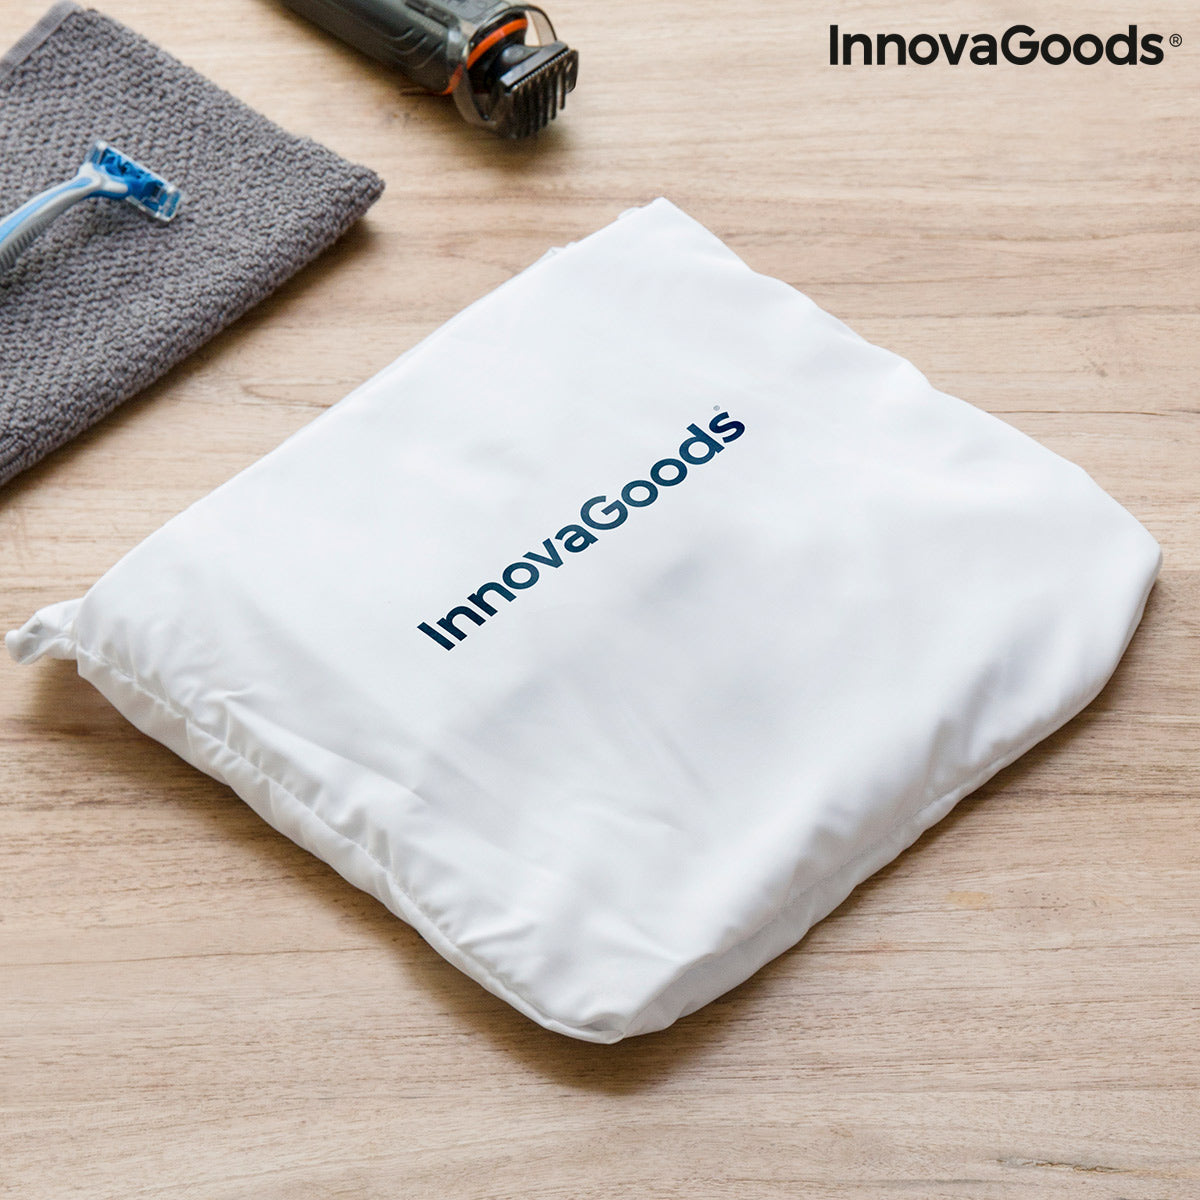 Telo Raccogli Barba con Ventose Bibdy InnovaGoods – InnovaGoods Store